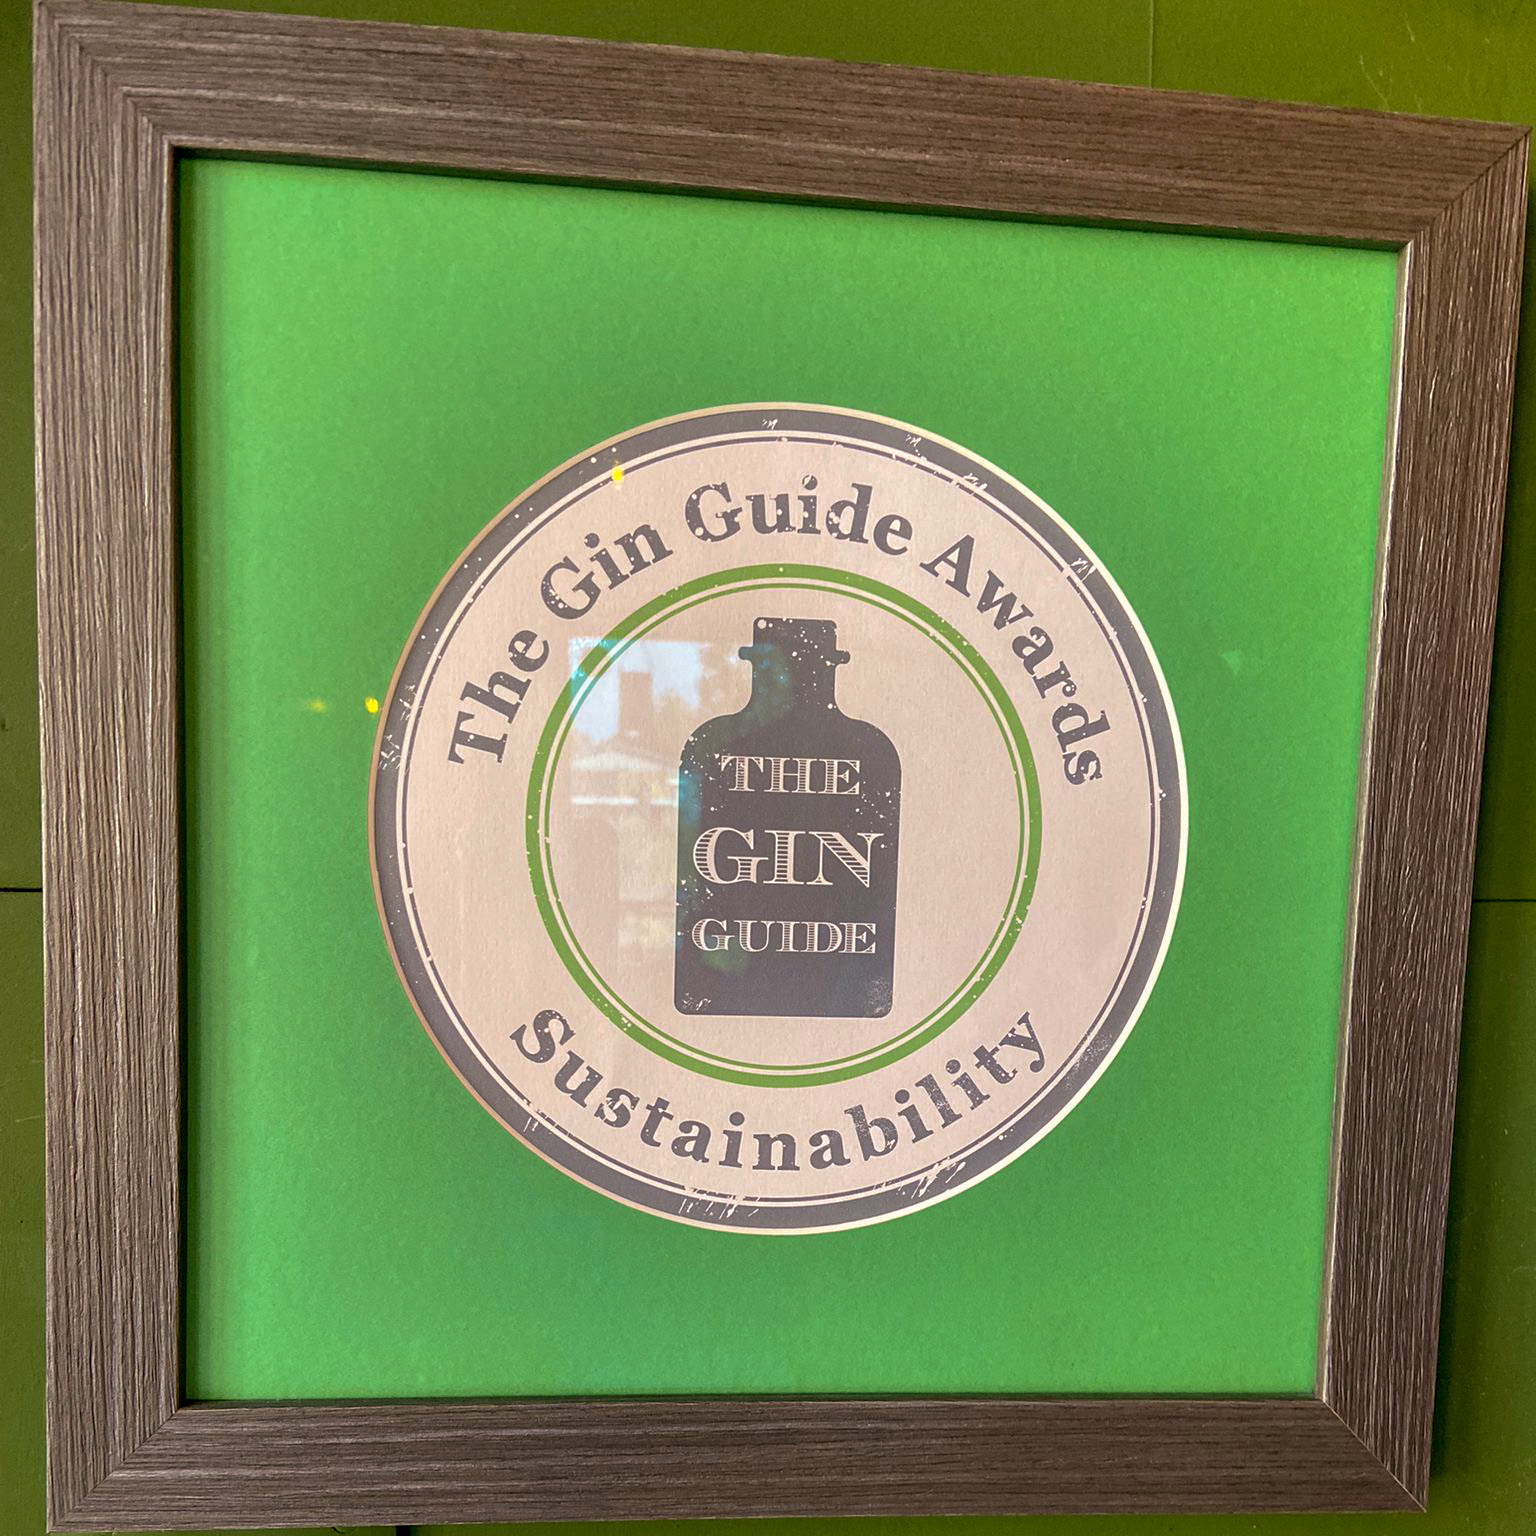 Shed One Sustainability Award